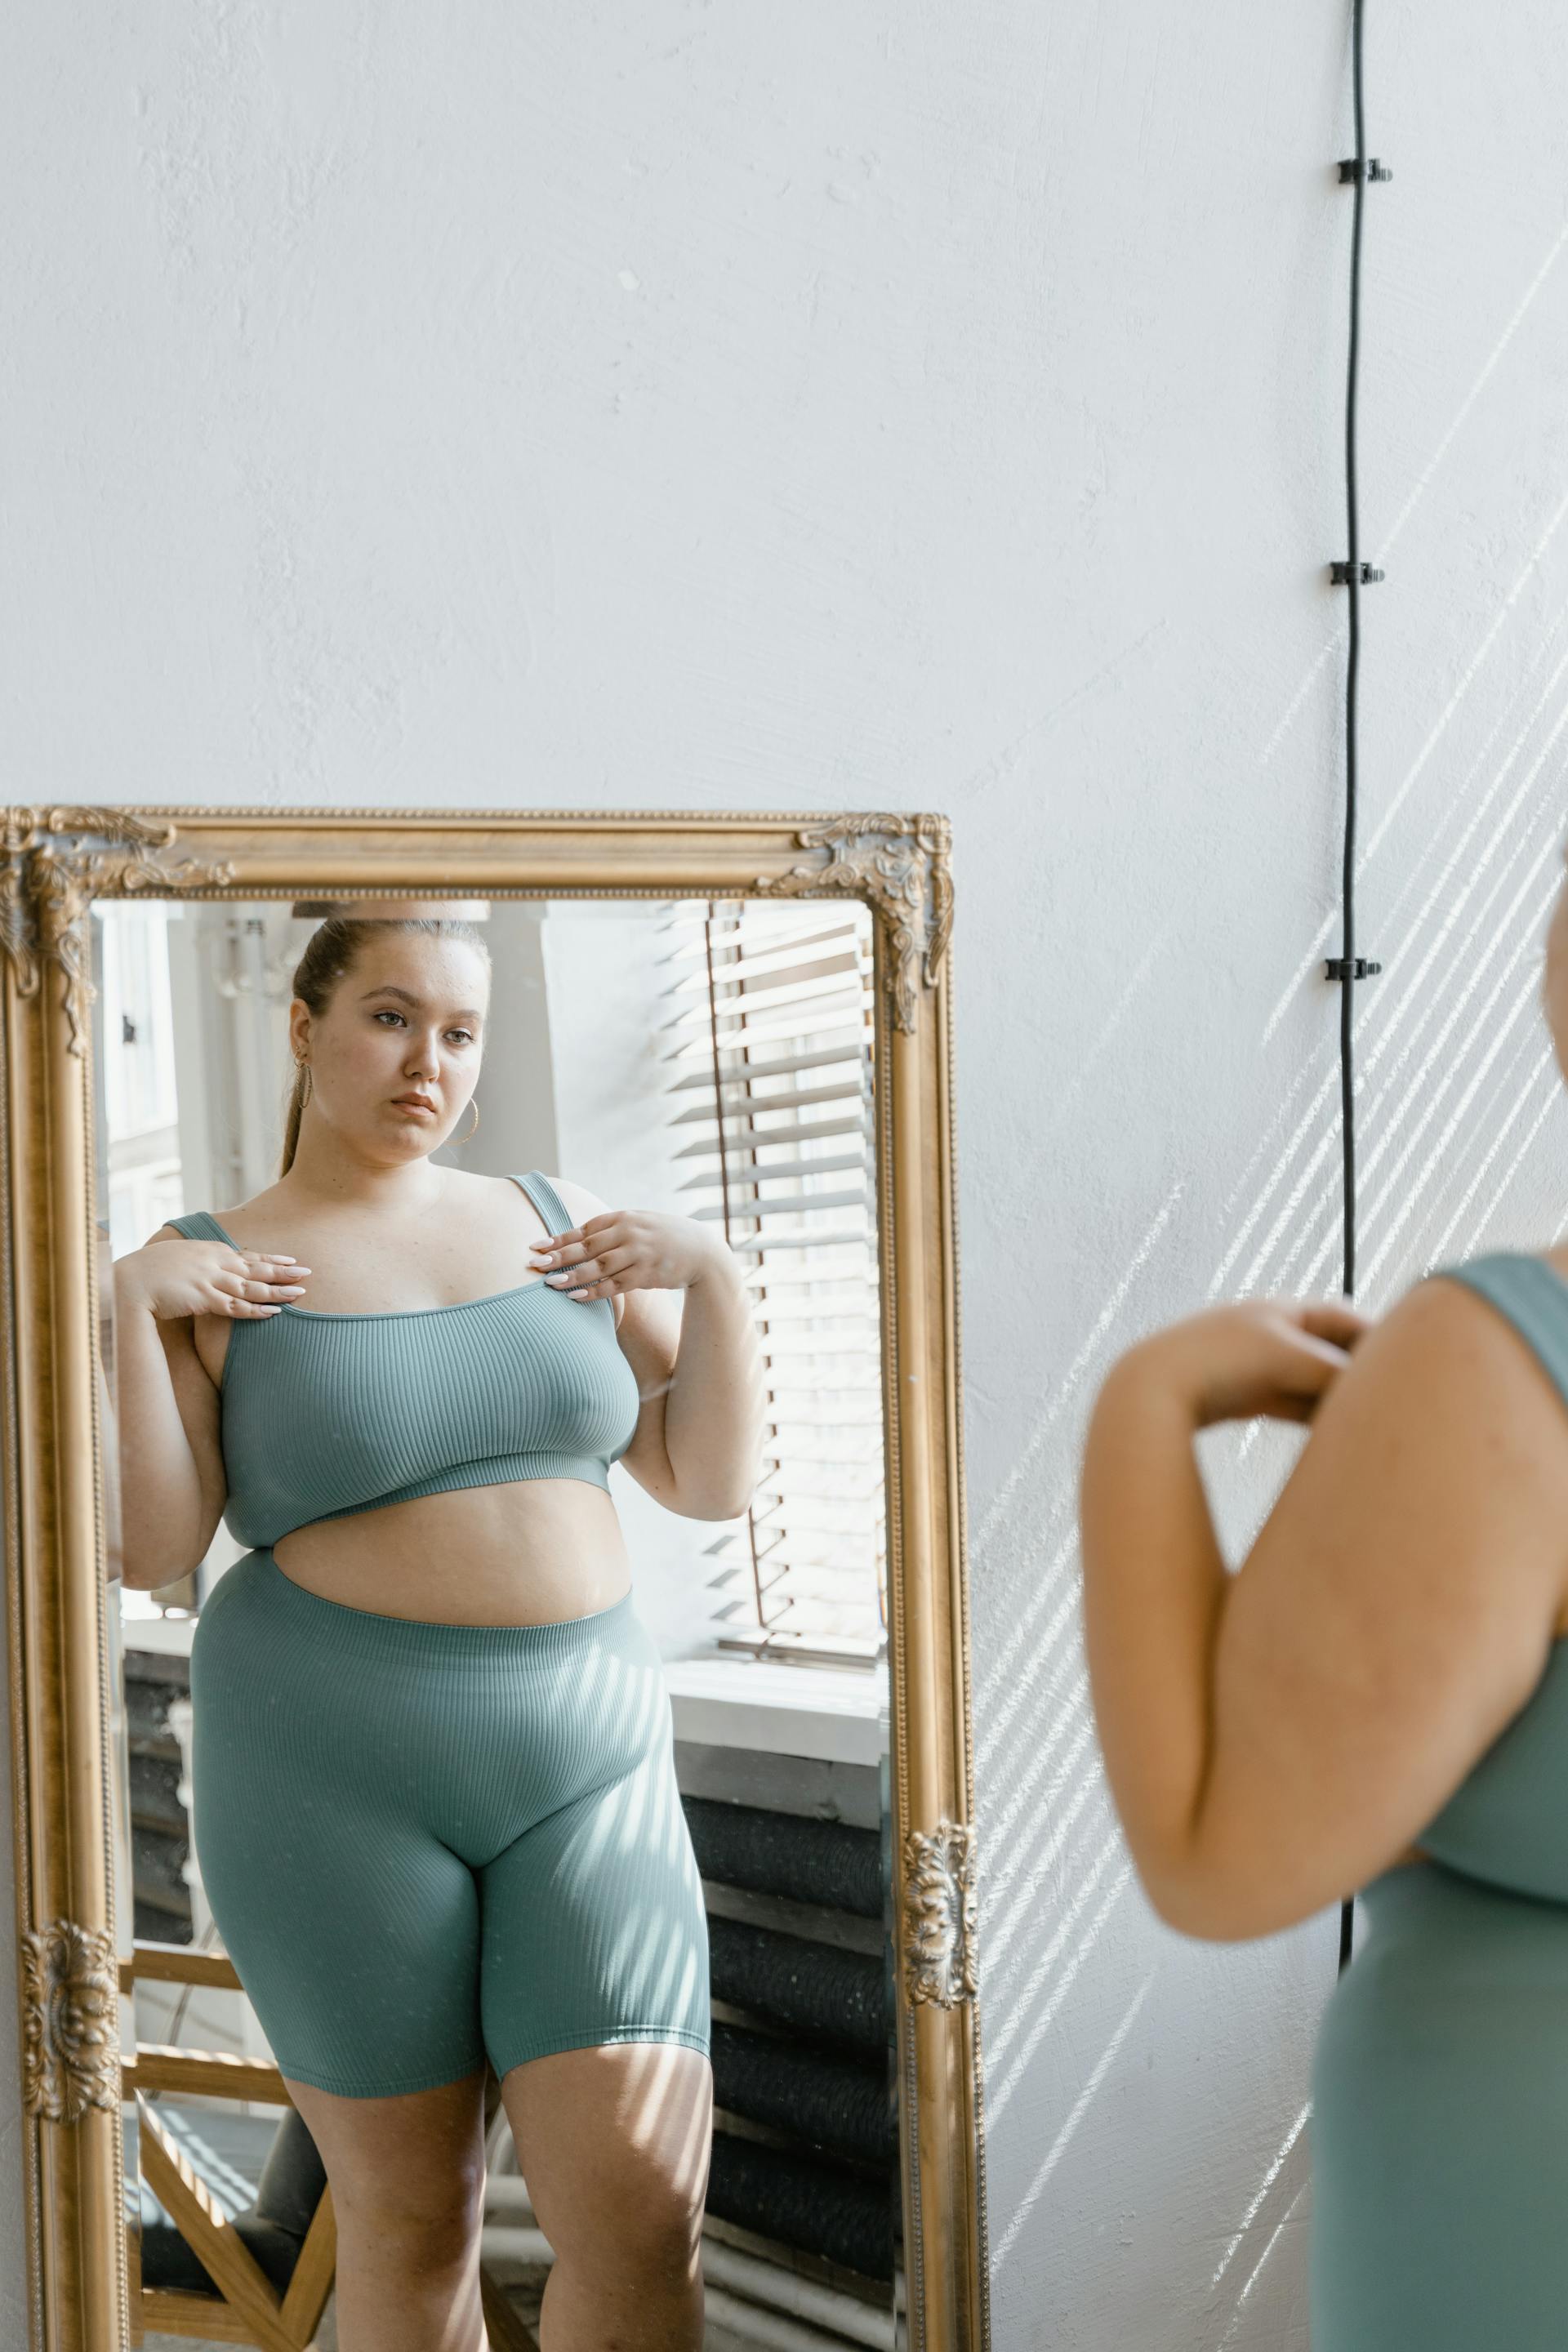 Una mujer mirándose al espejo | Fuente: Pexels